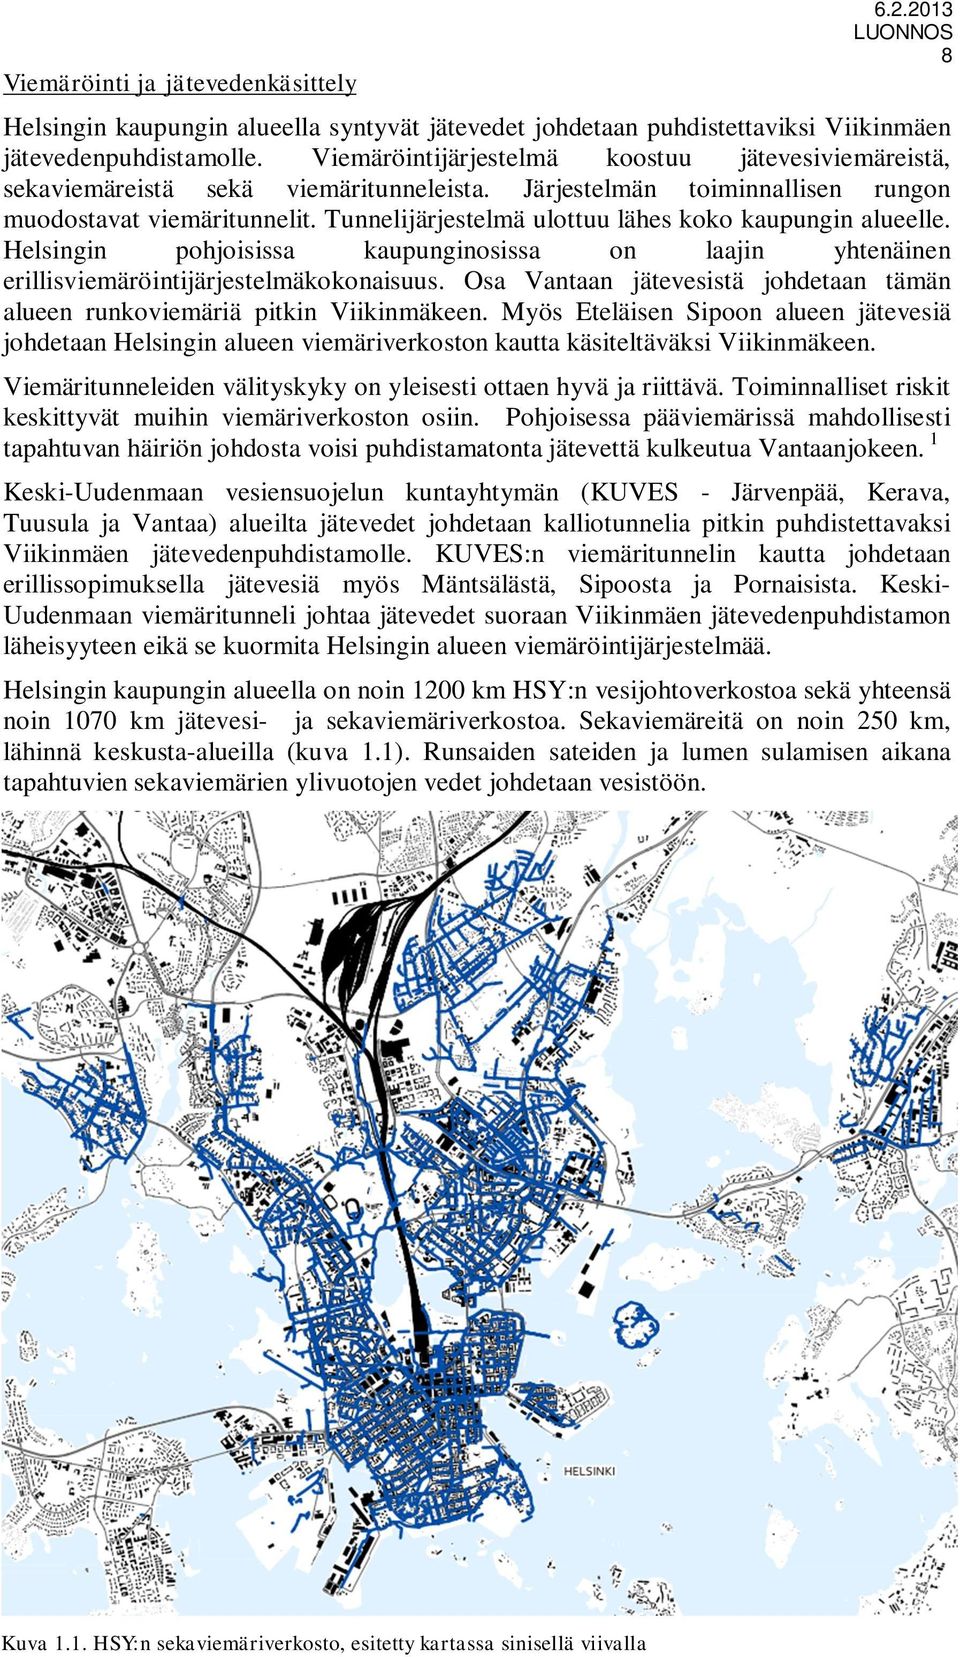 Tunnelijärjestelmä ulottuu lähes koko kaupungin alueelle. Helsingin pohjoisissa kaupunginosissa on laajin yhtenäinen erillisviemäröintijärjestelmäkokonaisuus.